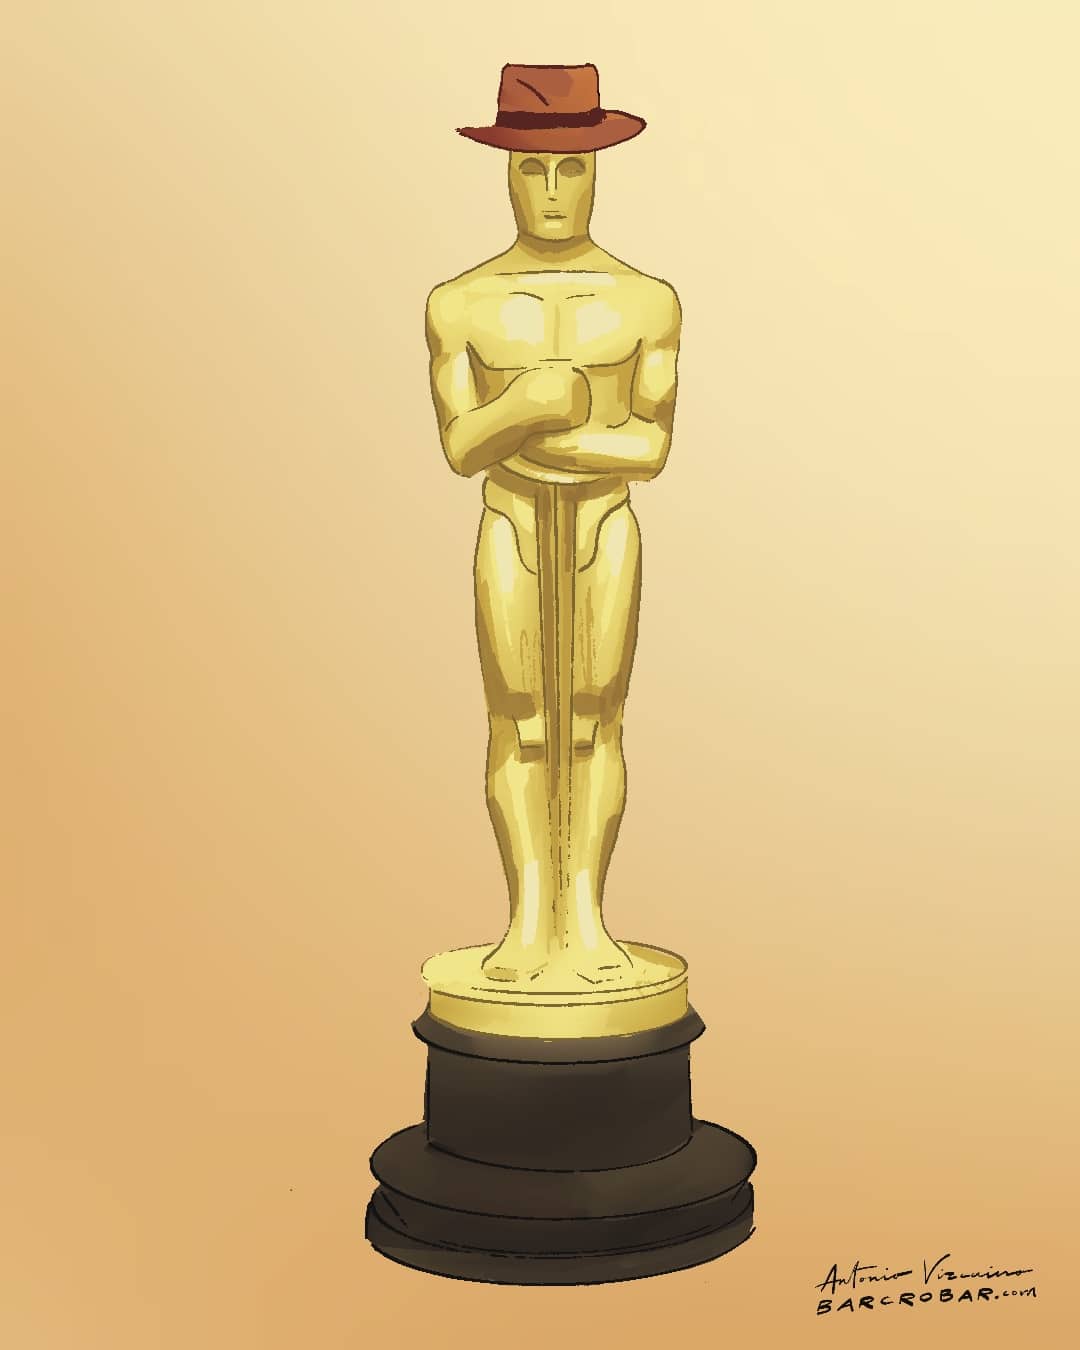 Meilleur film, meilleur réalisateur, meilleur acteur: « Oppenheimer » triomphe aux Oscars